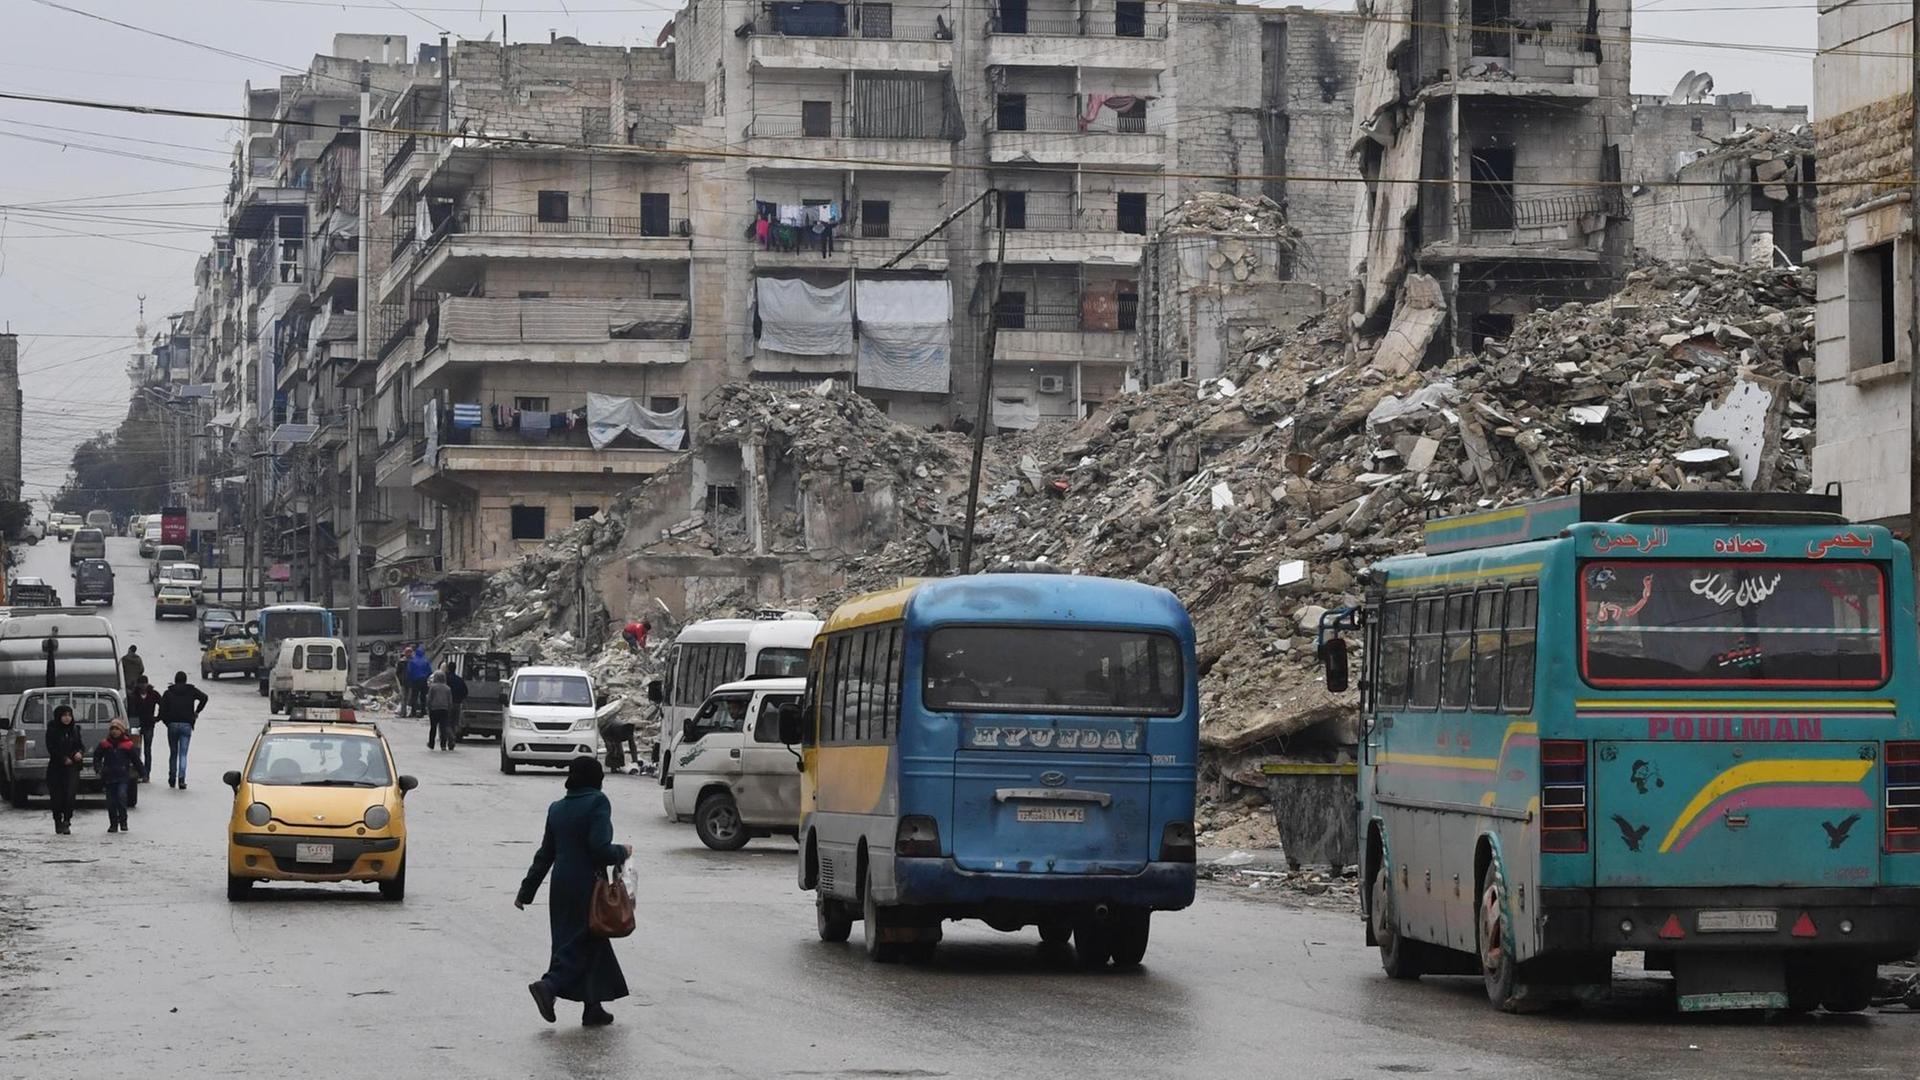 07.02.2019: Busse fahren auf einer Straße in Aleppo, zerstörte Häuser sind zu sehen